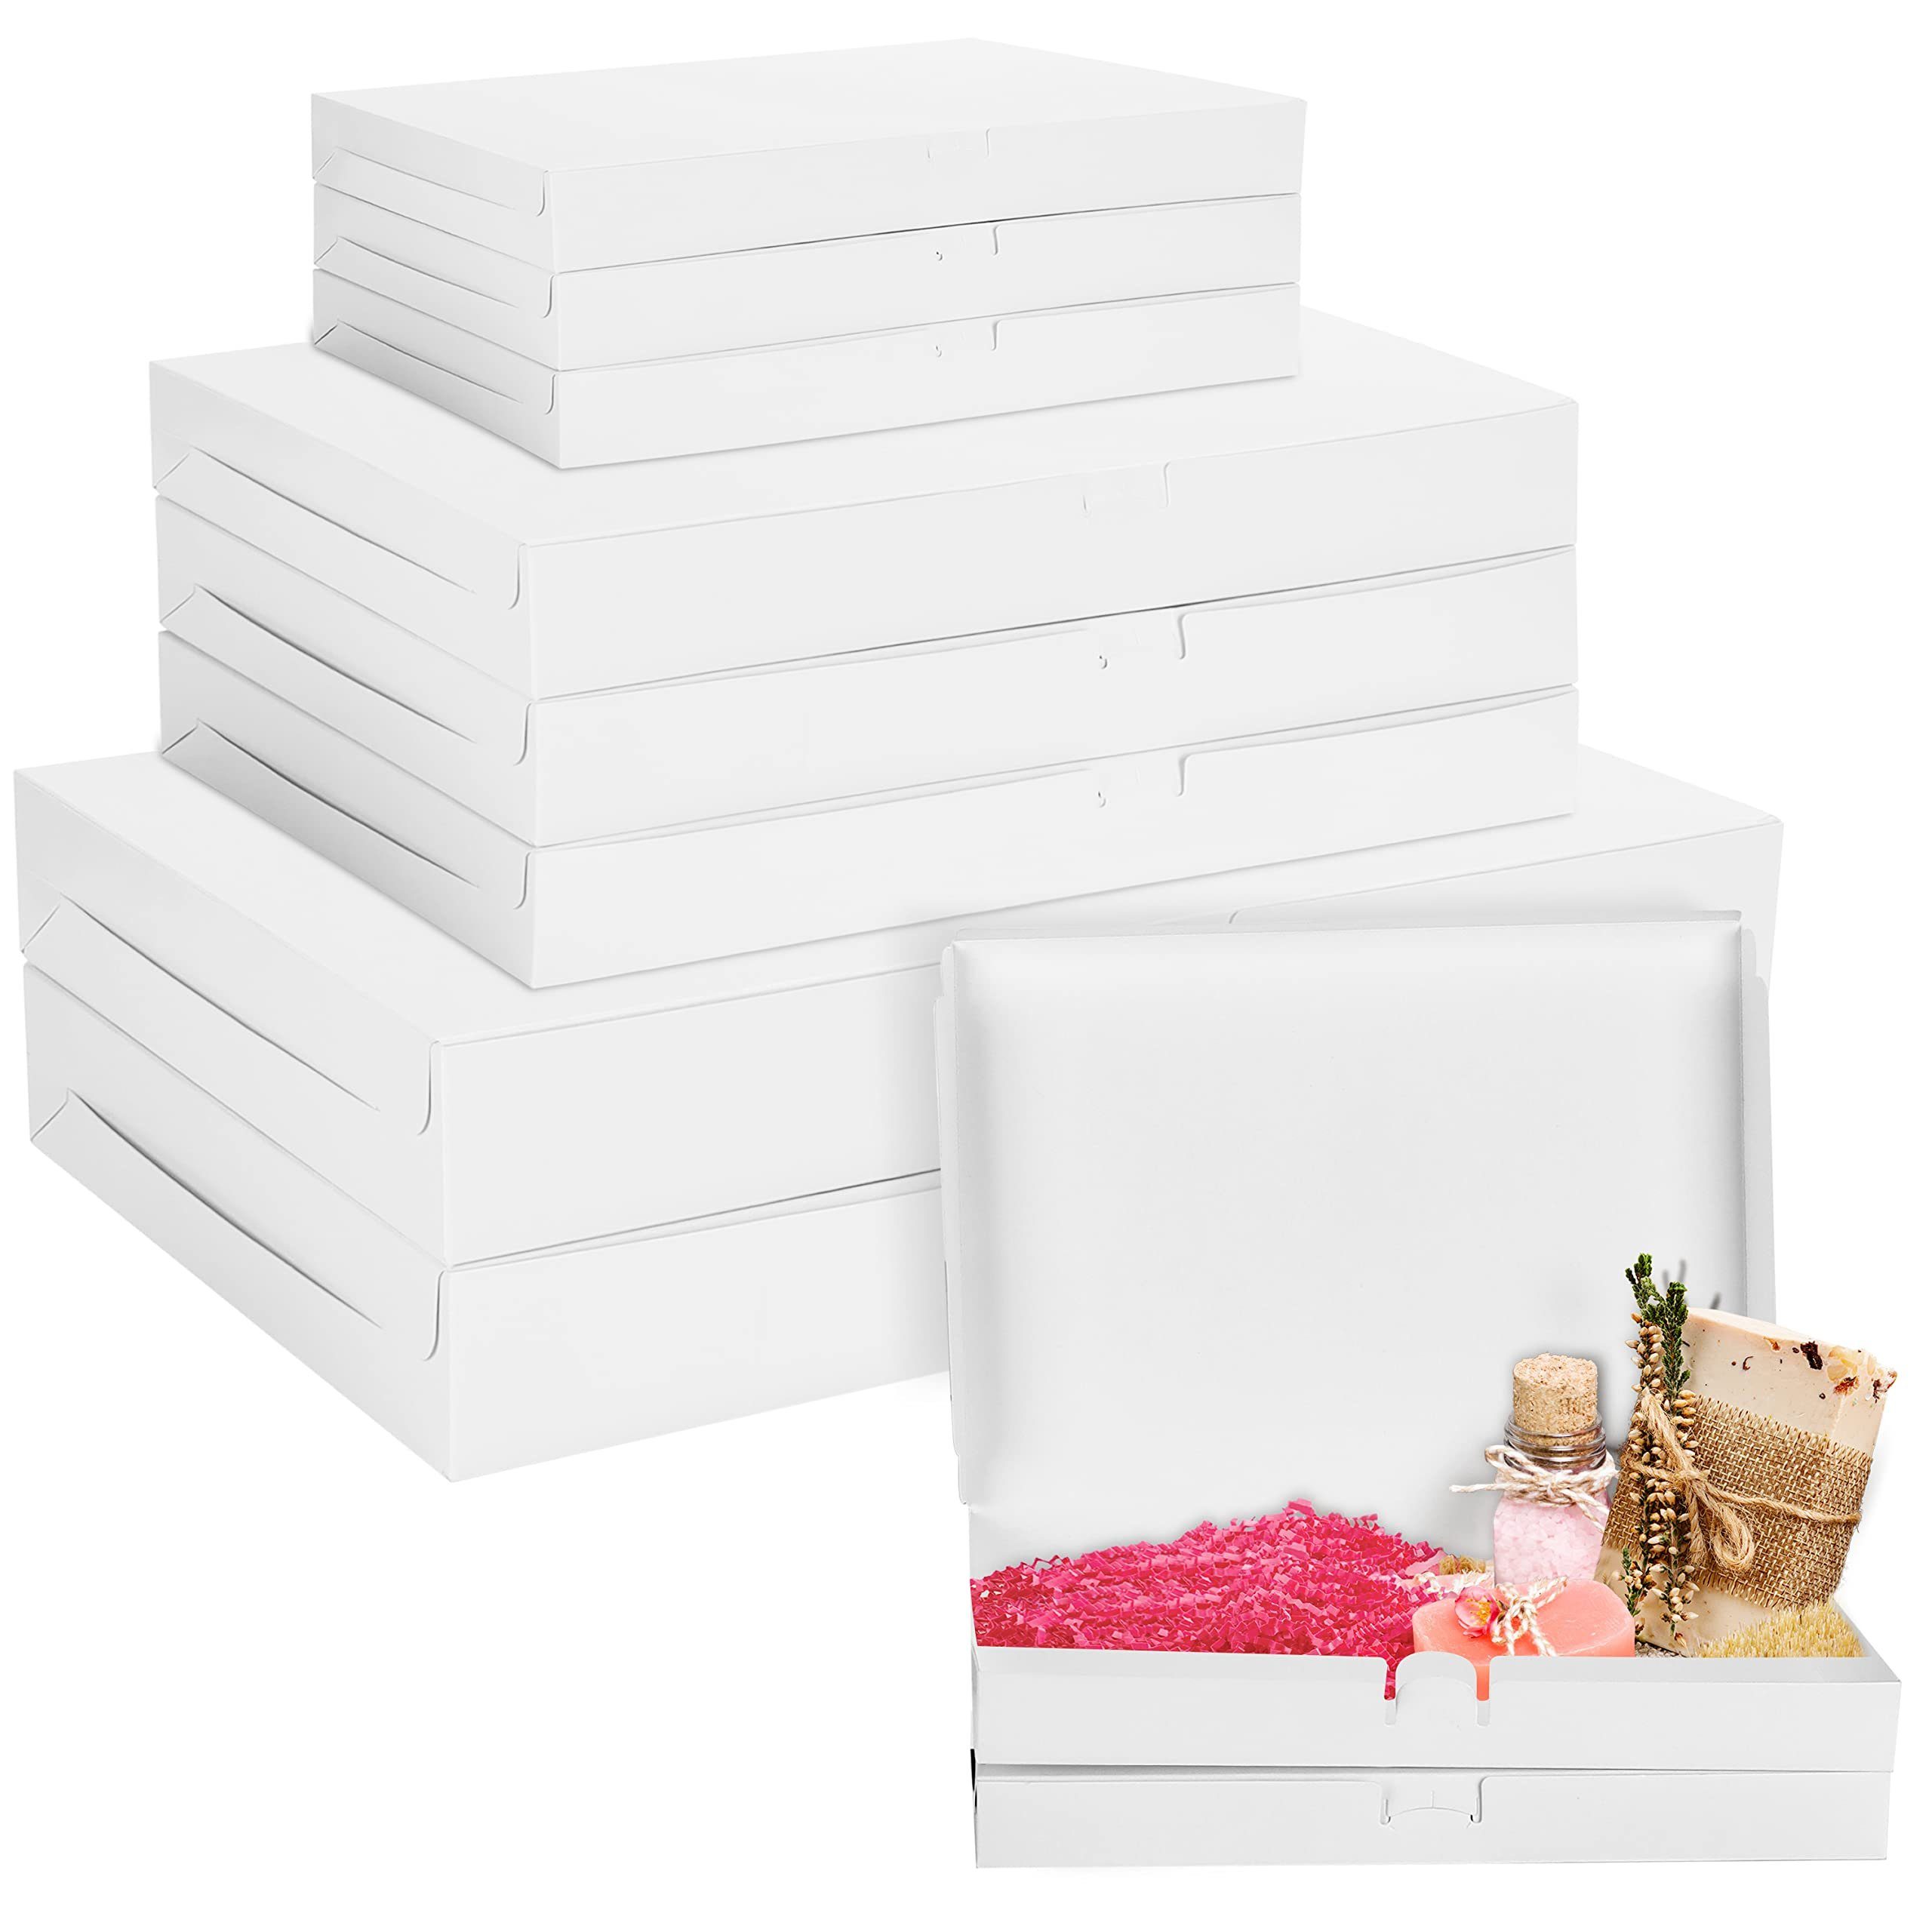 Belle Vous Geschenkbox 10er Pack Karton Geschenkboxen Weiß - Klein, Mittel & Groß, 10 Stück Karton Geschenkboxen Set Weiß - Klein, Mittel & Groß